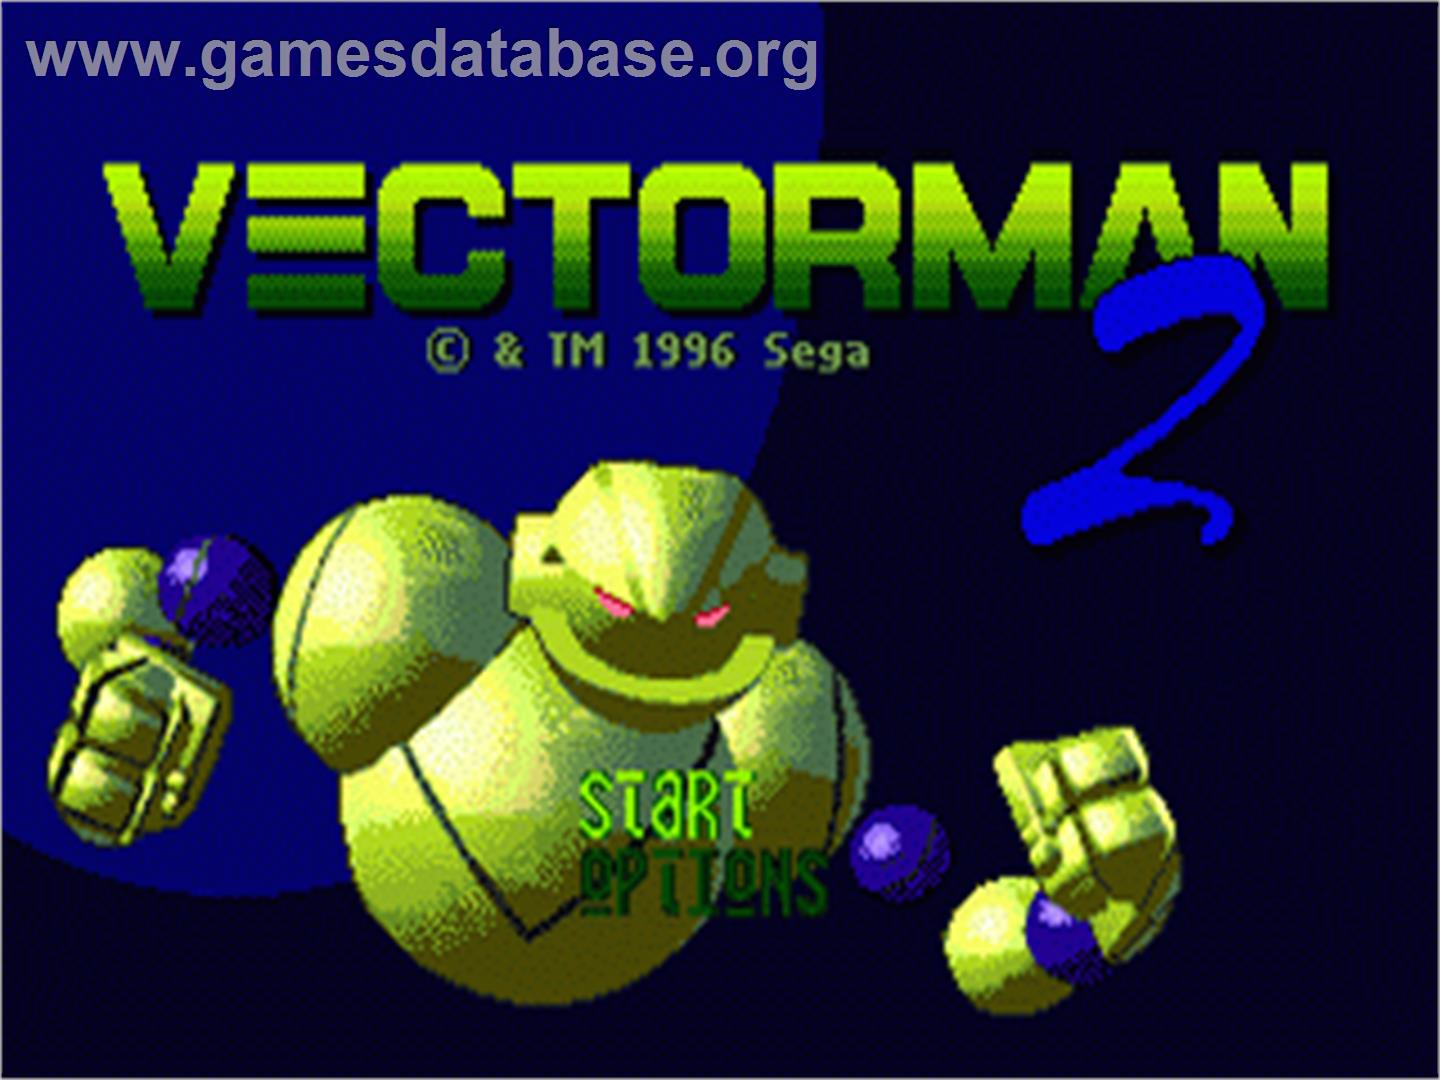 Vectorman 2 - Sega Nomad - Artwork - Title Screen